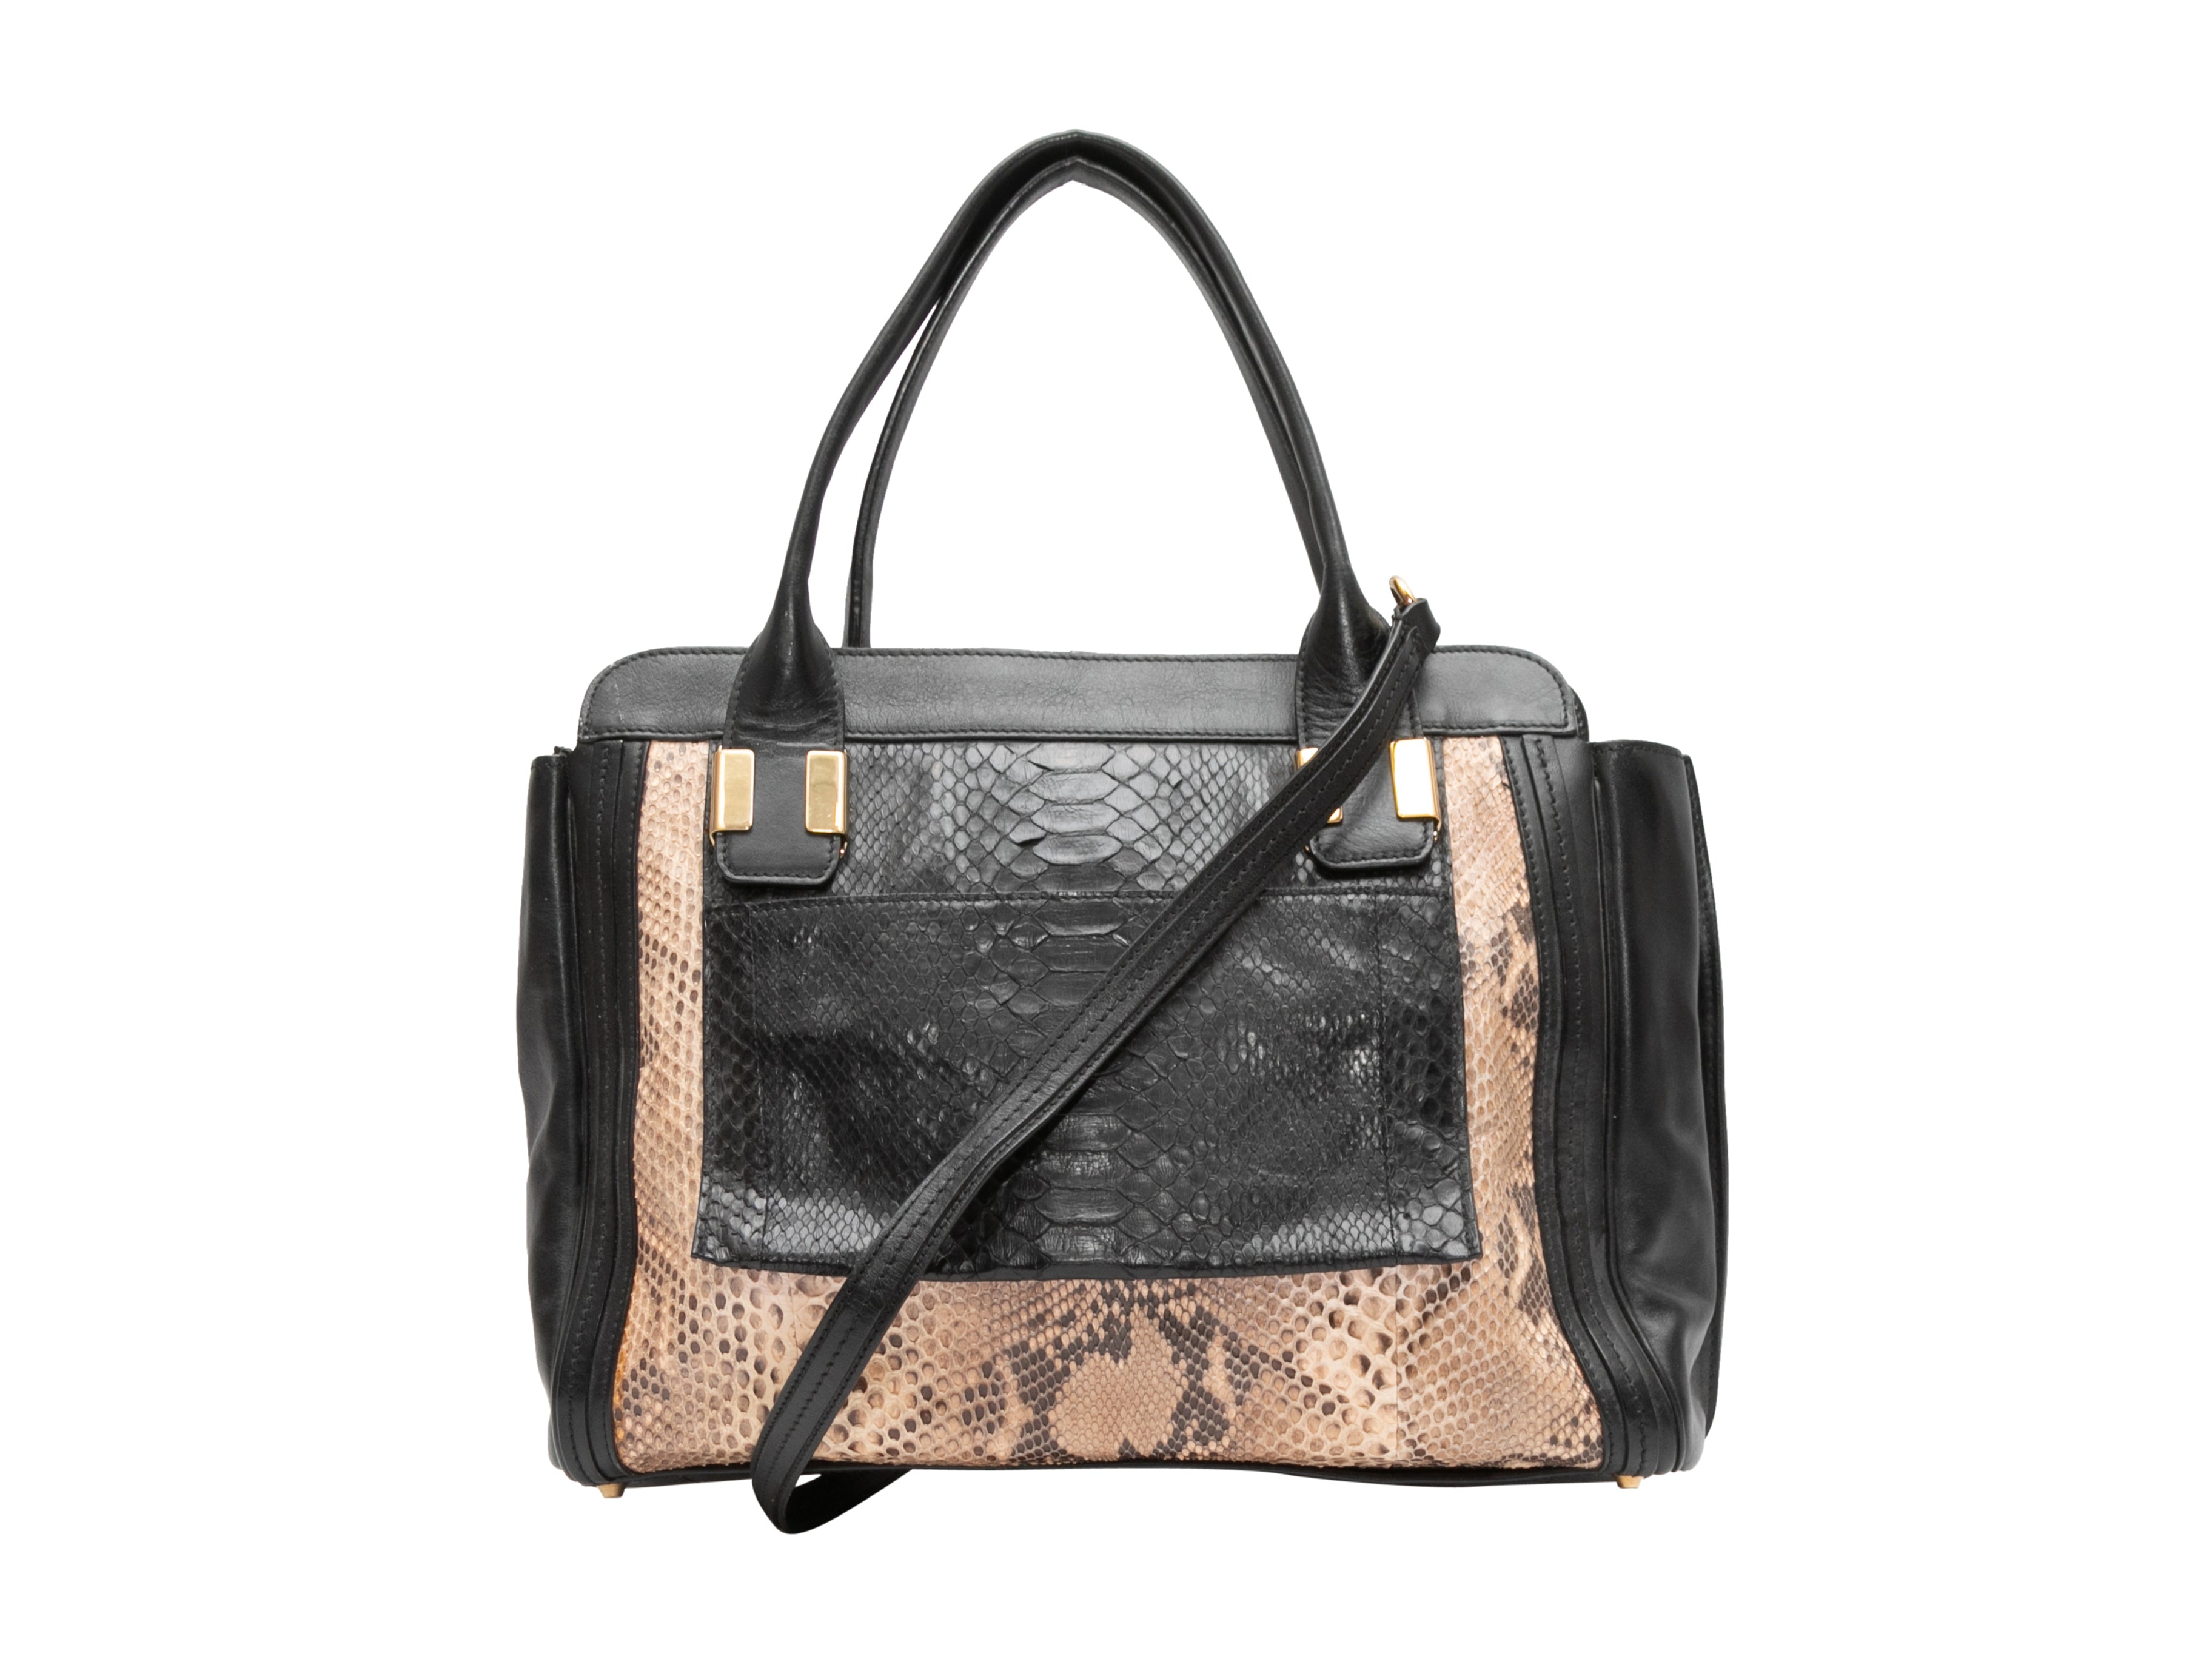 Black & Beige Chloe Leather & Python Tote Bag - Designer Revival